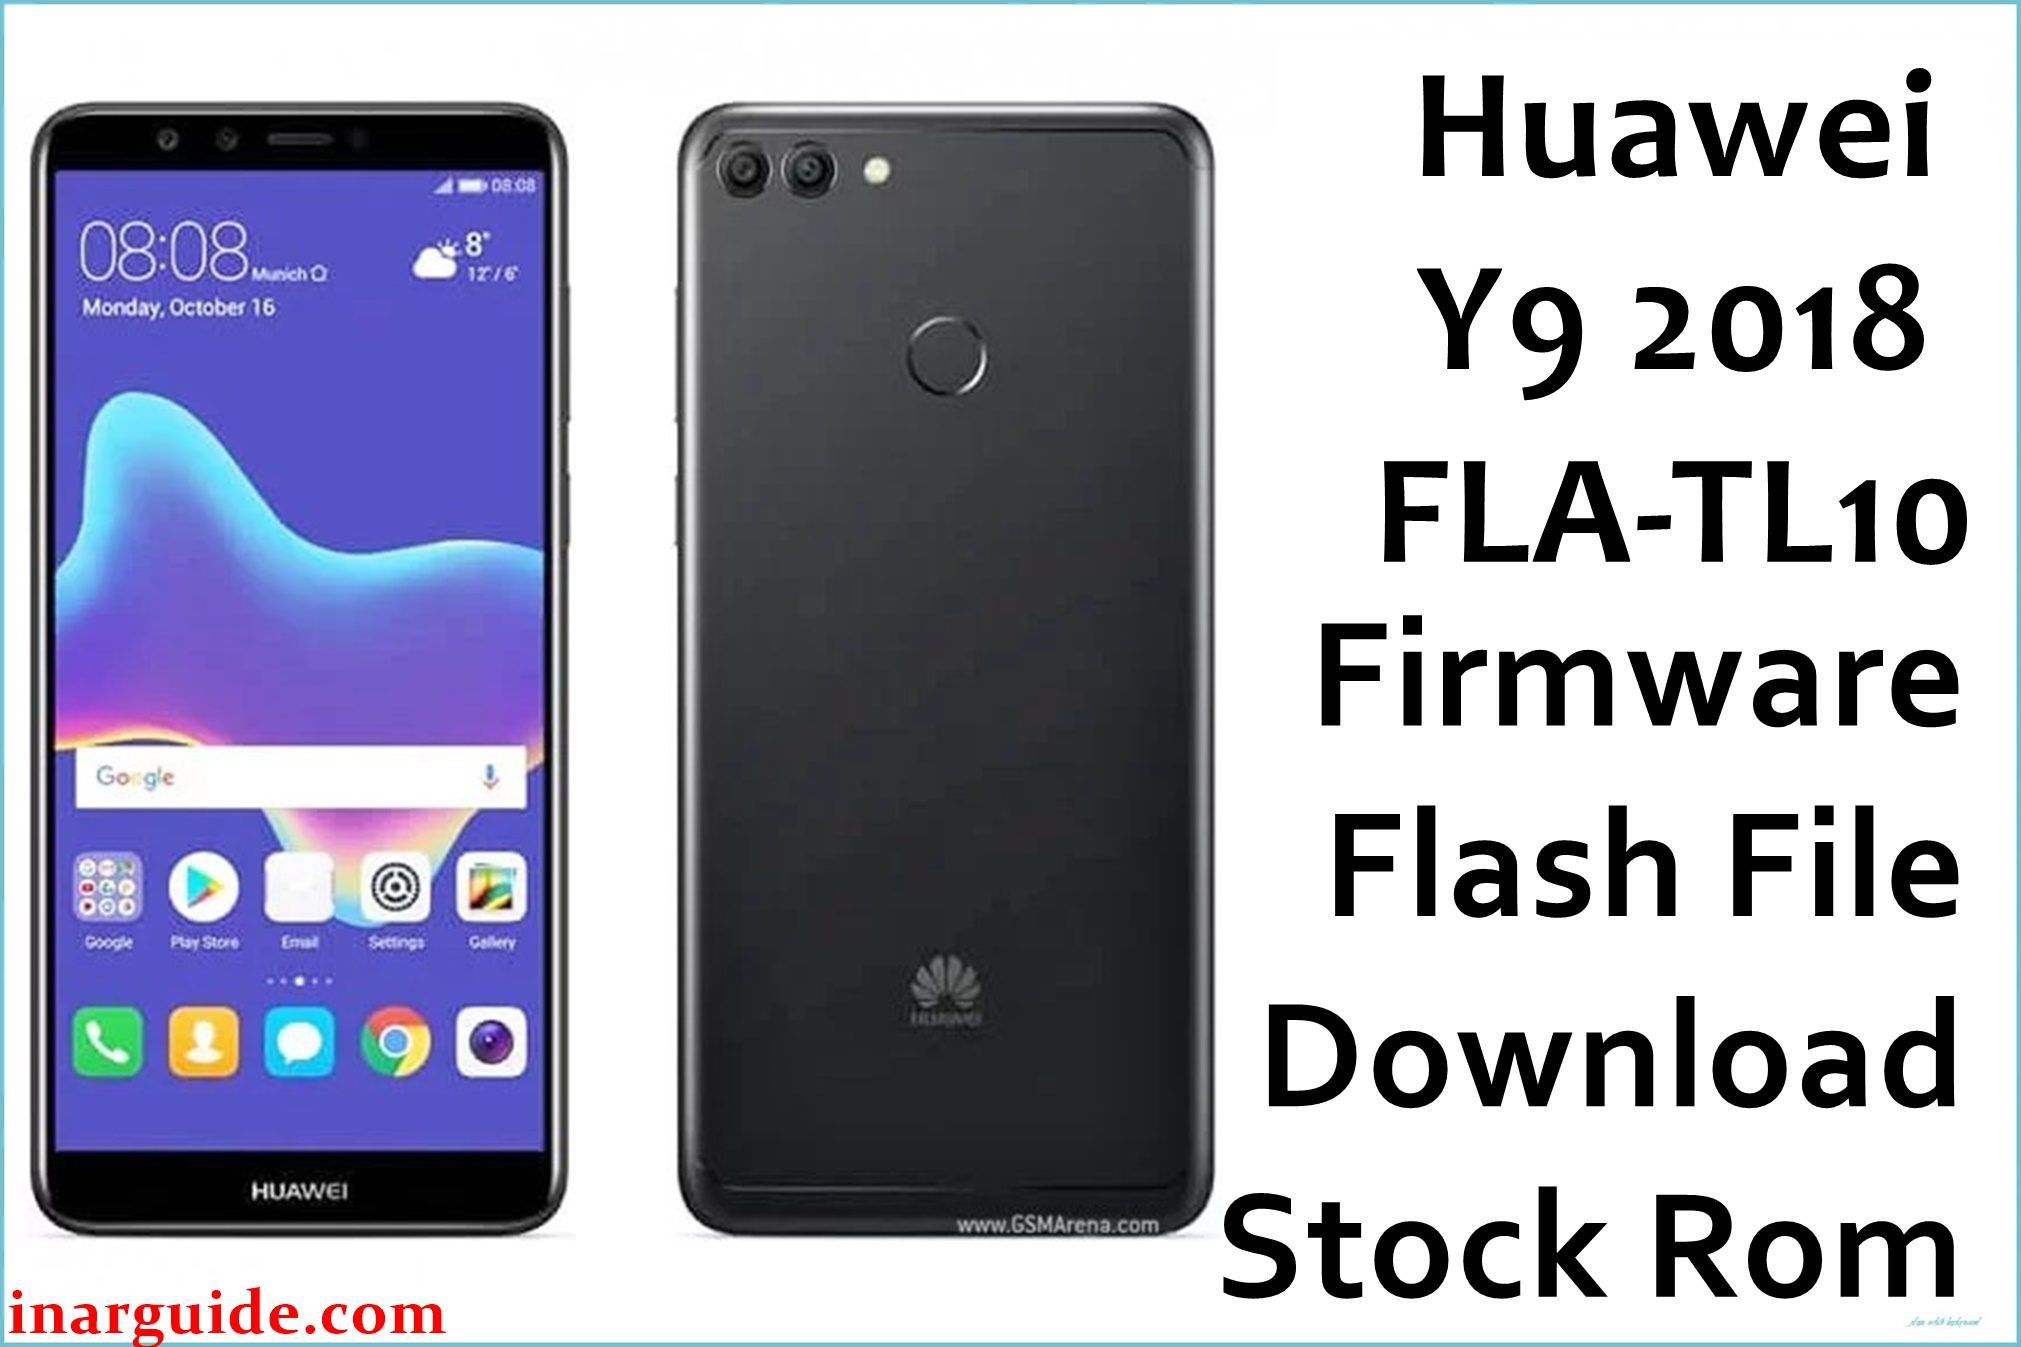 Huawei Y9 2018 FLA TL10